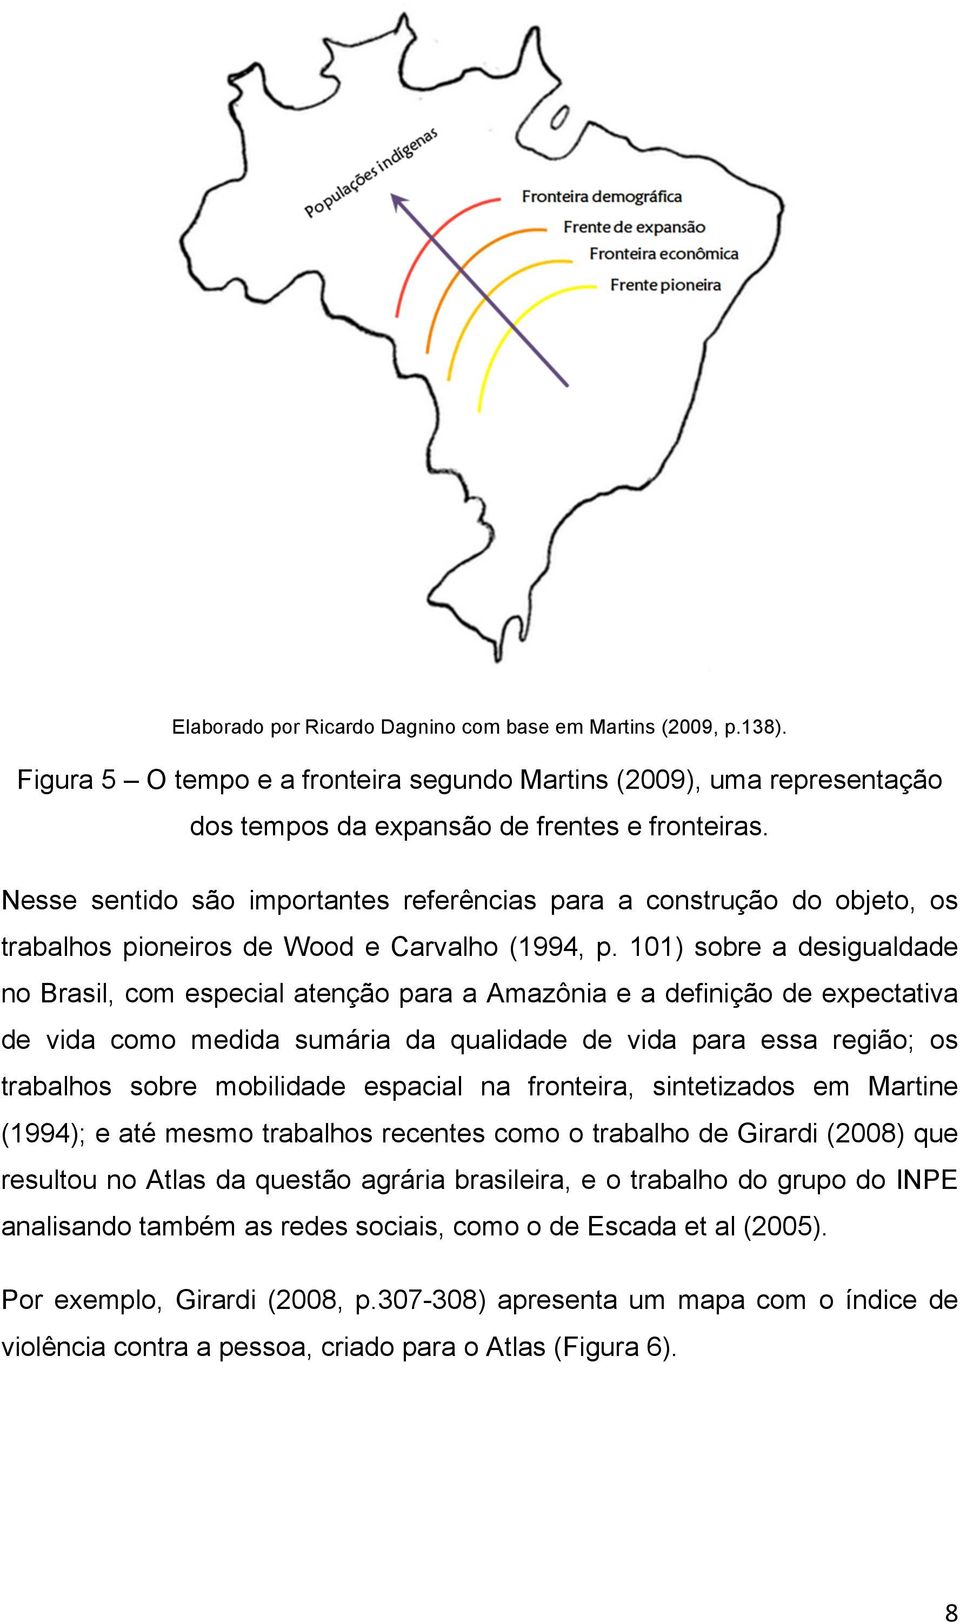 101) sobre a desigualdade no Brasil, com especial atenção para a Amazônia e a definição de expectativa de vida como medida sumária da qualidade de vida para essa região; os trabalhos sobre mobilidade